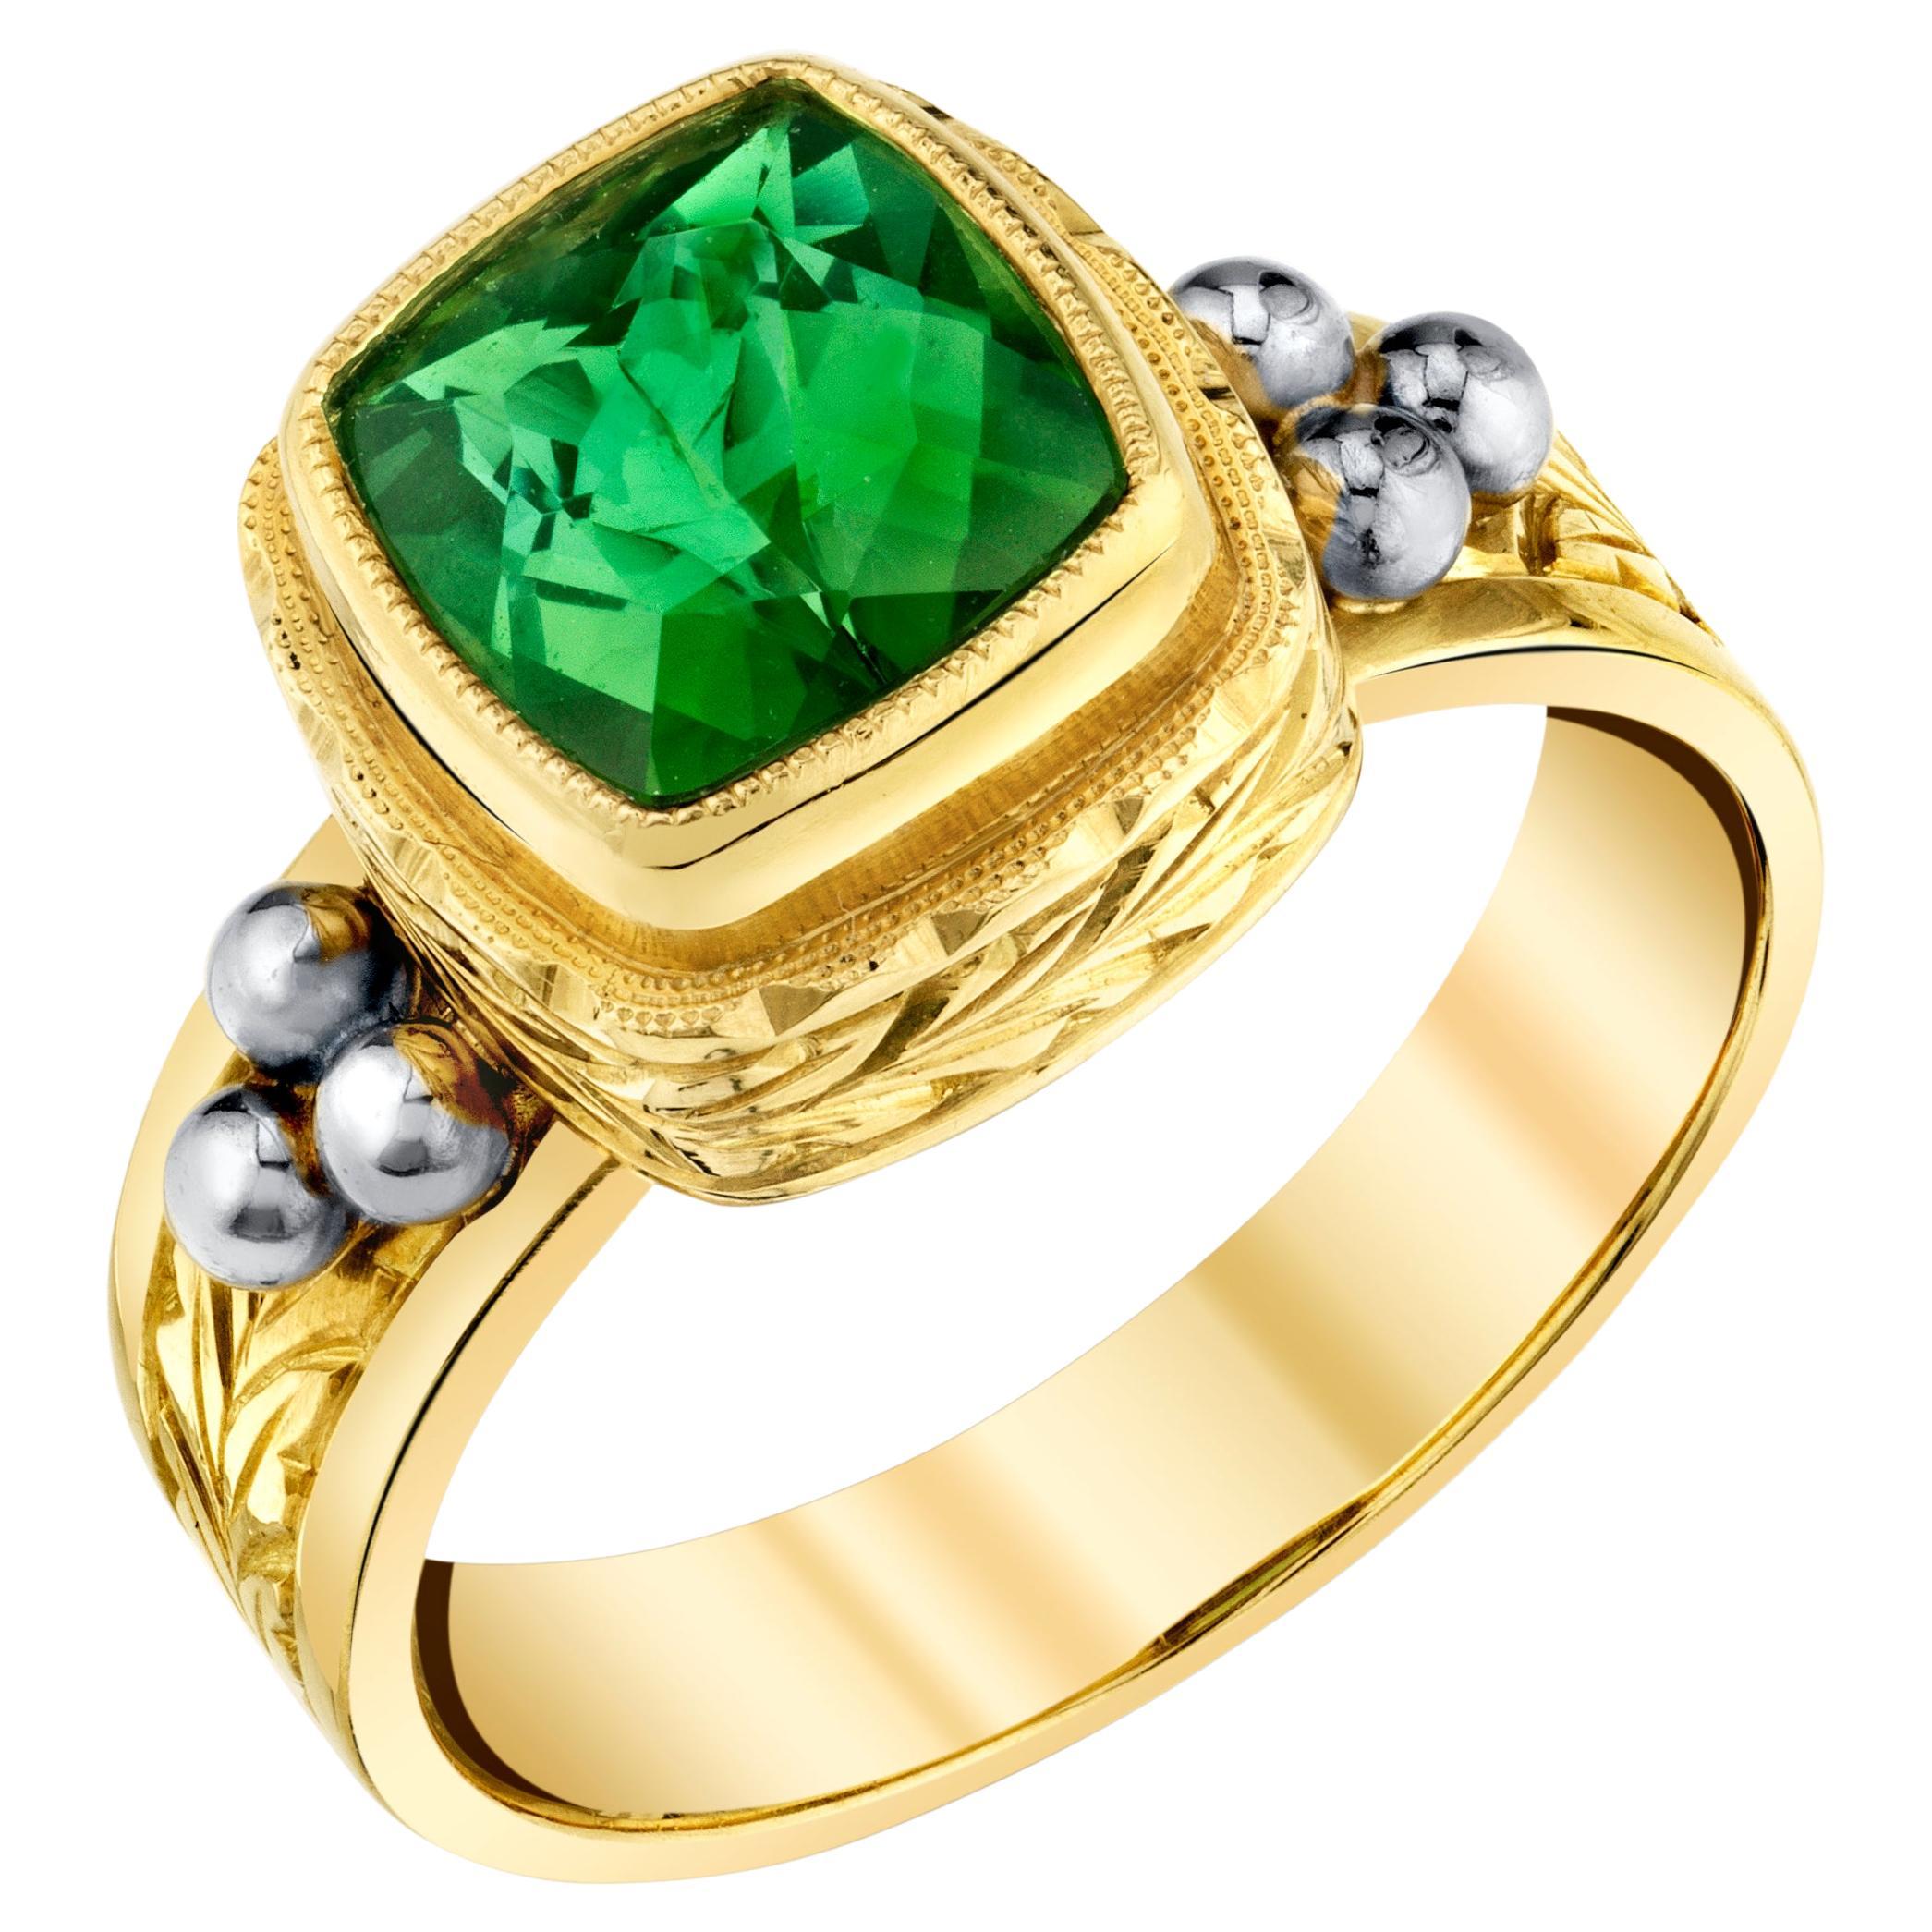 Ring aus 18 Karat Gelbgold mit grünem Turmalin und handgefertigtem 1,83 Karat